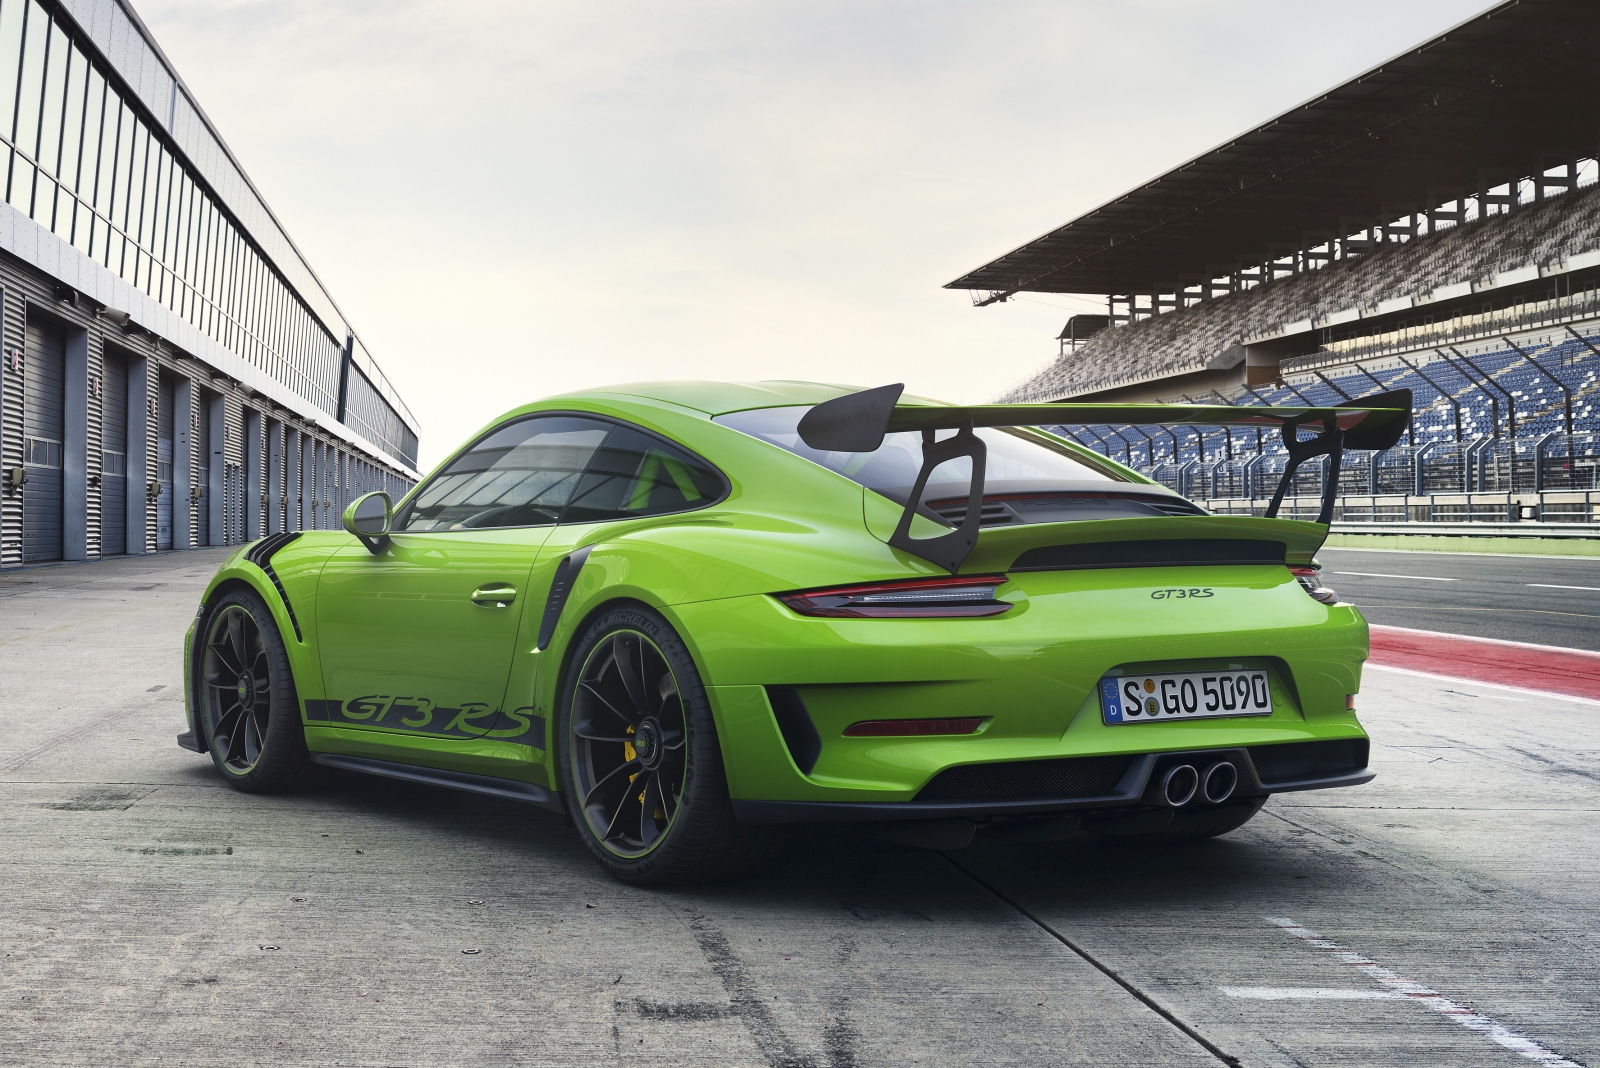 Itt Az Uj Porsche 911 Gt3 Rs Autoblog